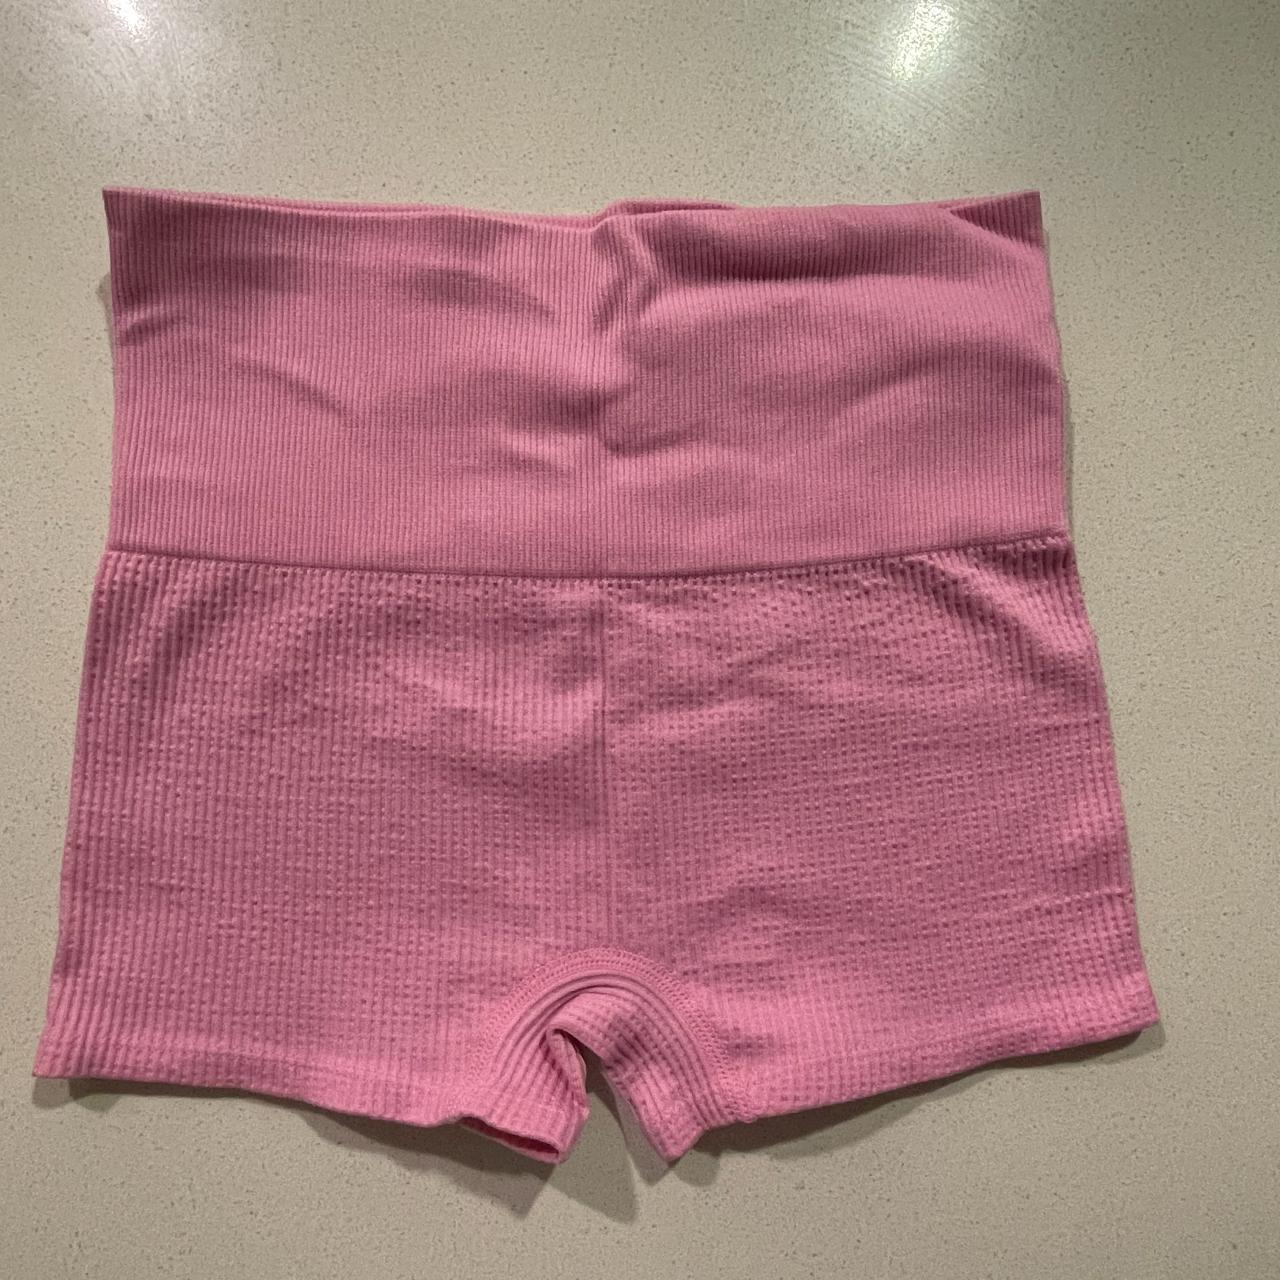 Target Women's Pink Shorts